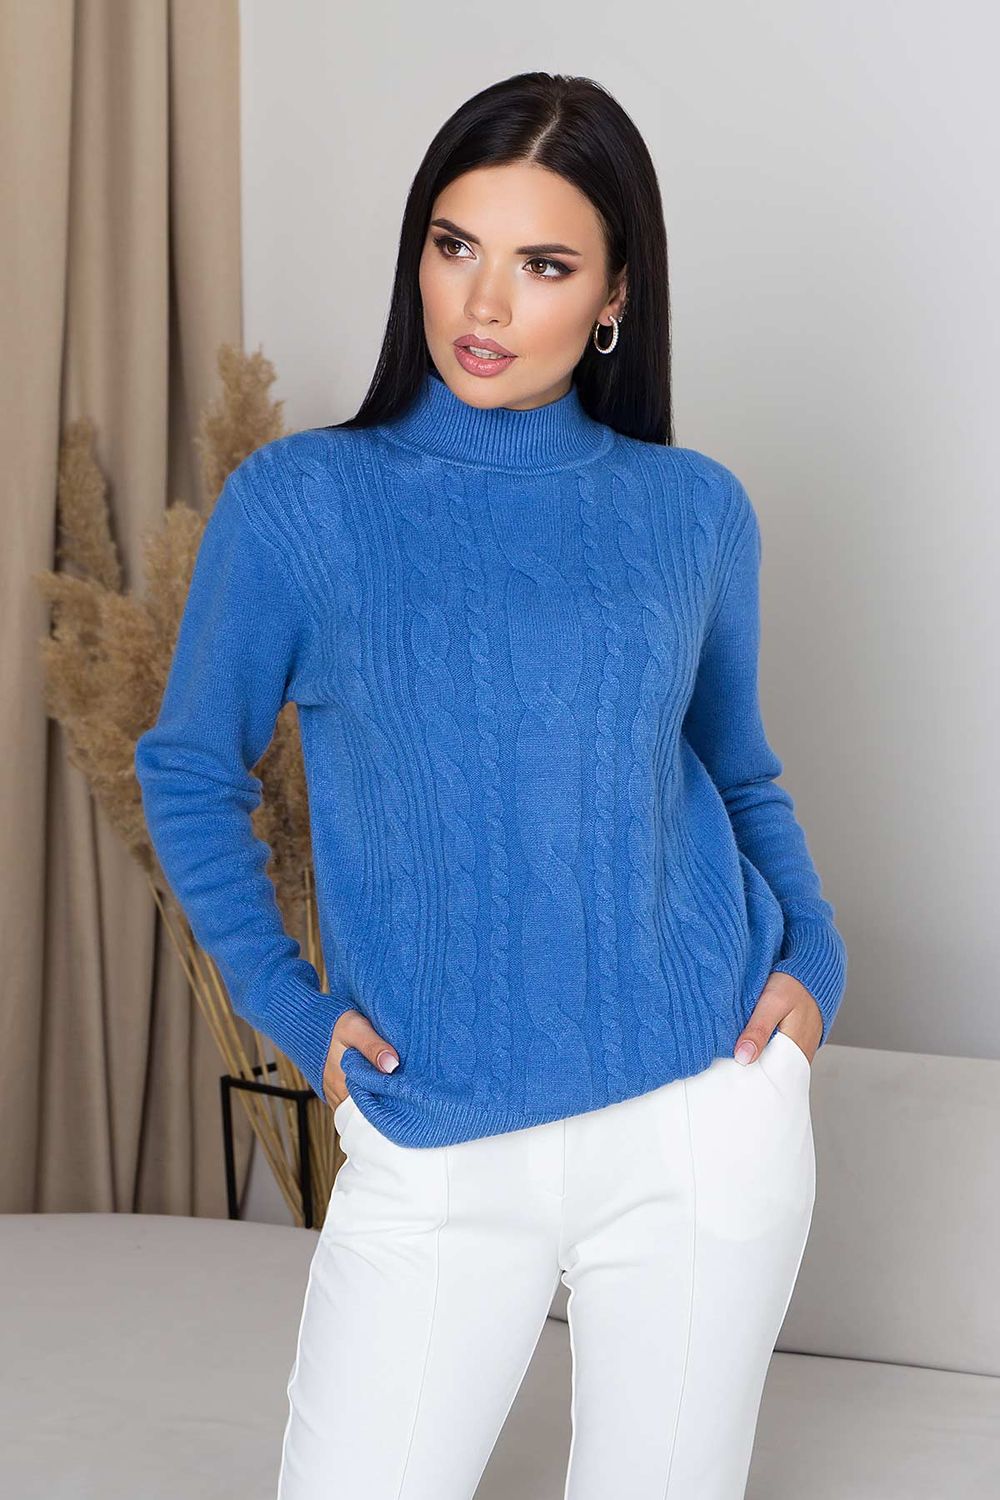 Женский вязаный свитер с узором косы синего цвета - фото